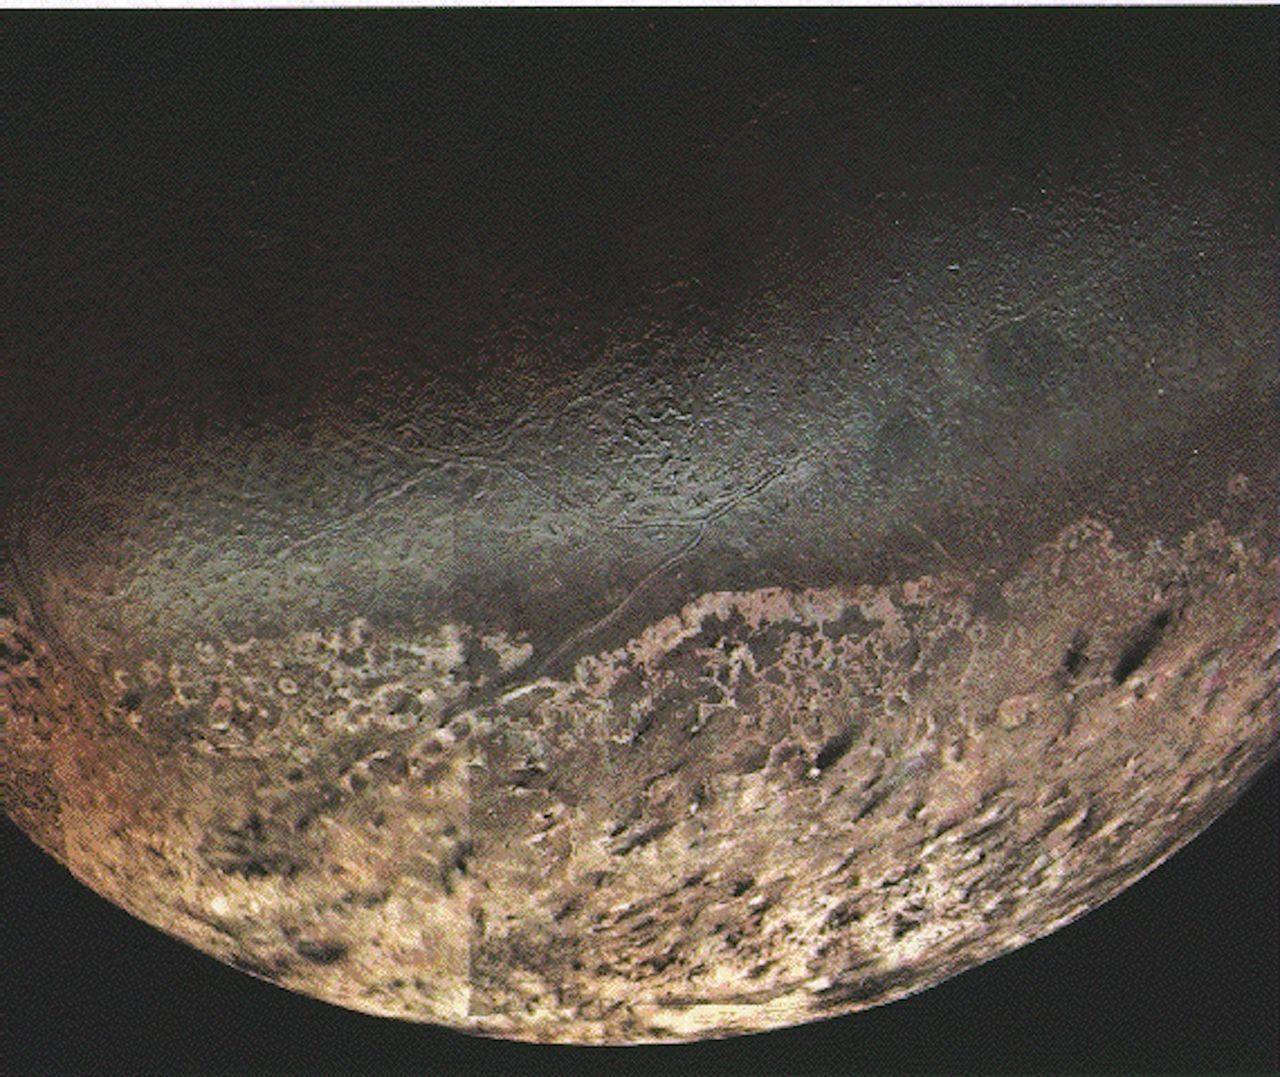 Zdjęcie Neptuna wykonane przez sondę Voyager 2 w 1989 r.